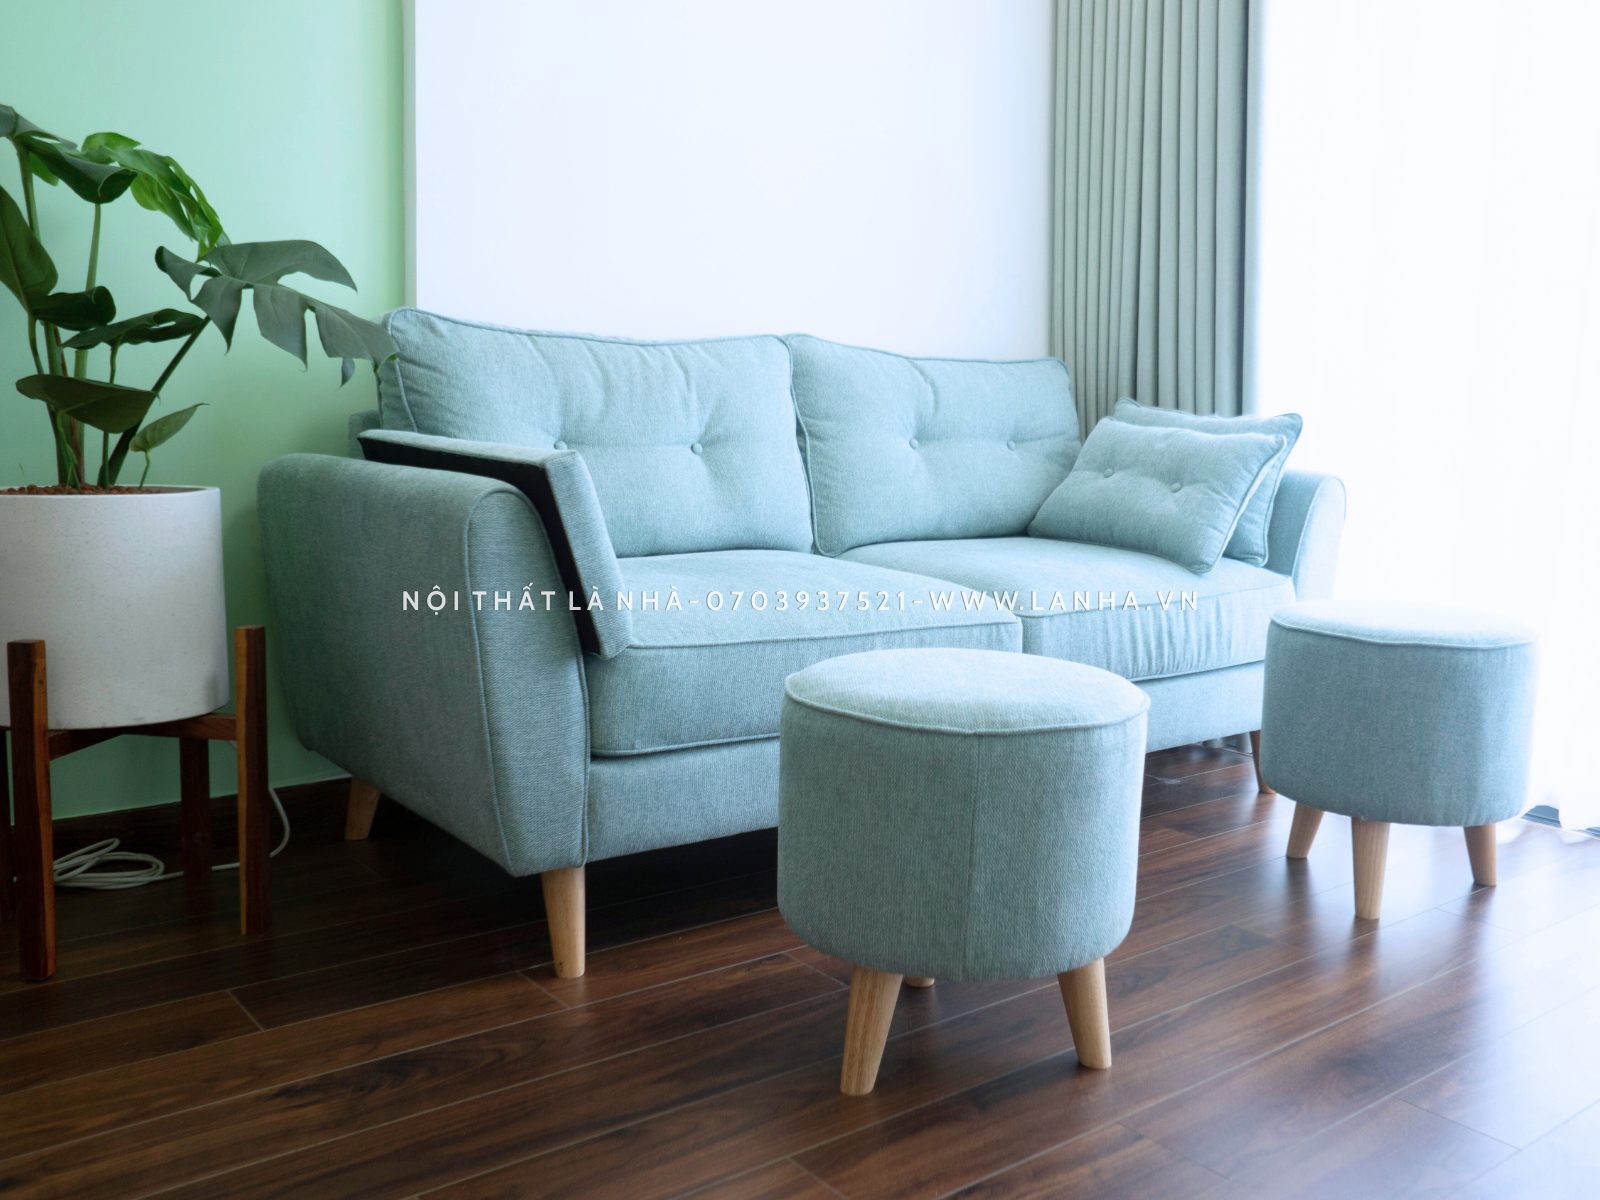 Sofa băng xanh ngọc kết hợp 2 ghế sofa đơn nhỏ gọn